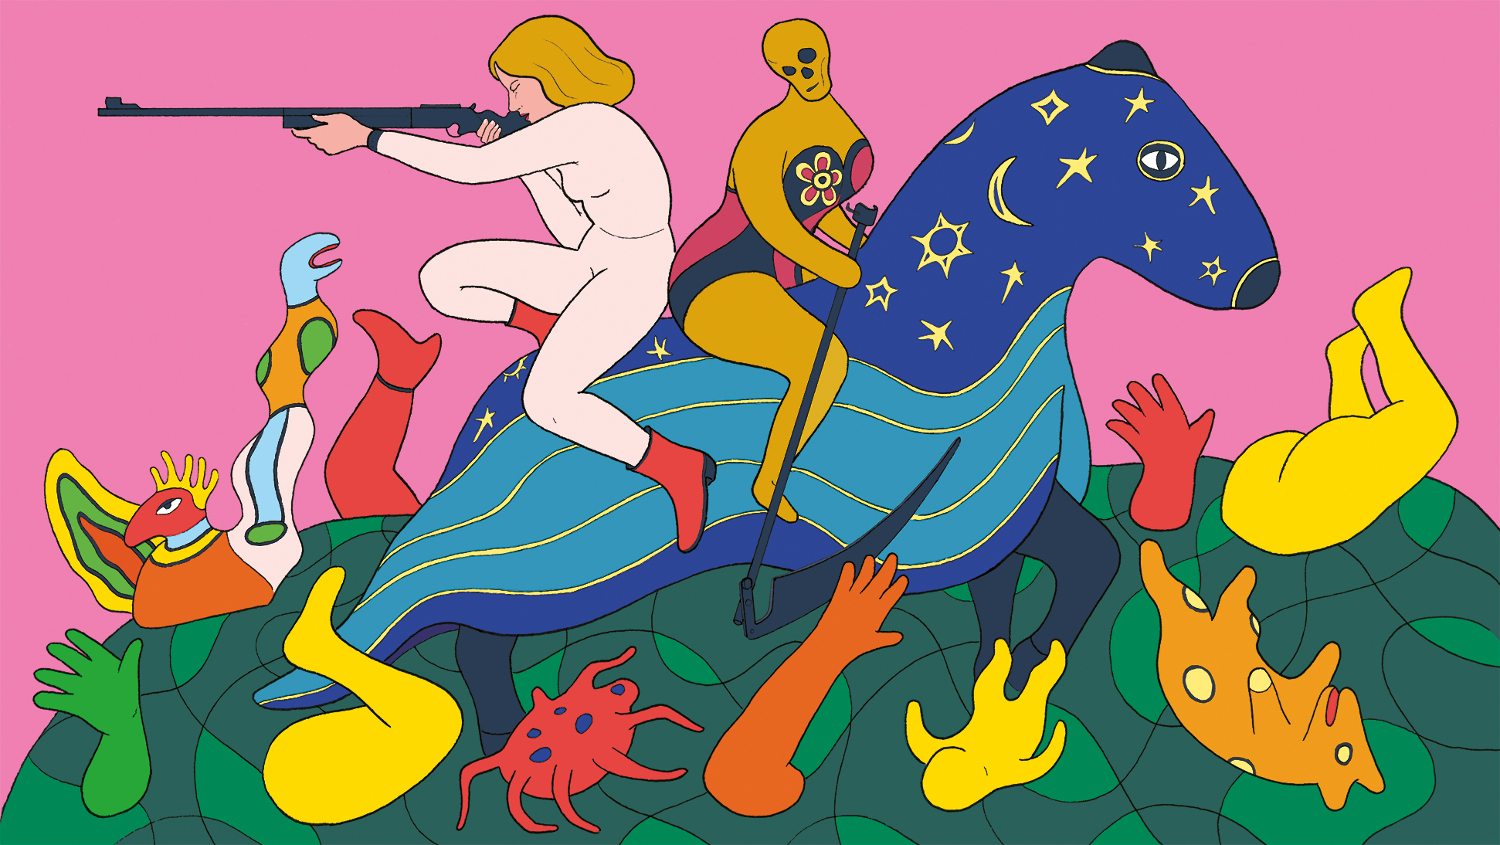 Fanny Michaëlis, Niki chevauchant La Mort, 2021
Illustration librement inspirée par l’œuvre éponyme de Niki de Saint Phalle, issue du Jardin des Tarots, situé en Toscane, © Fanny Michaëlis